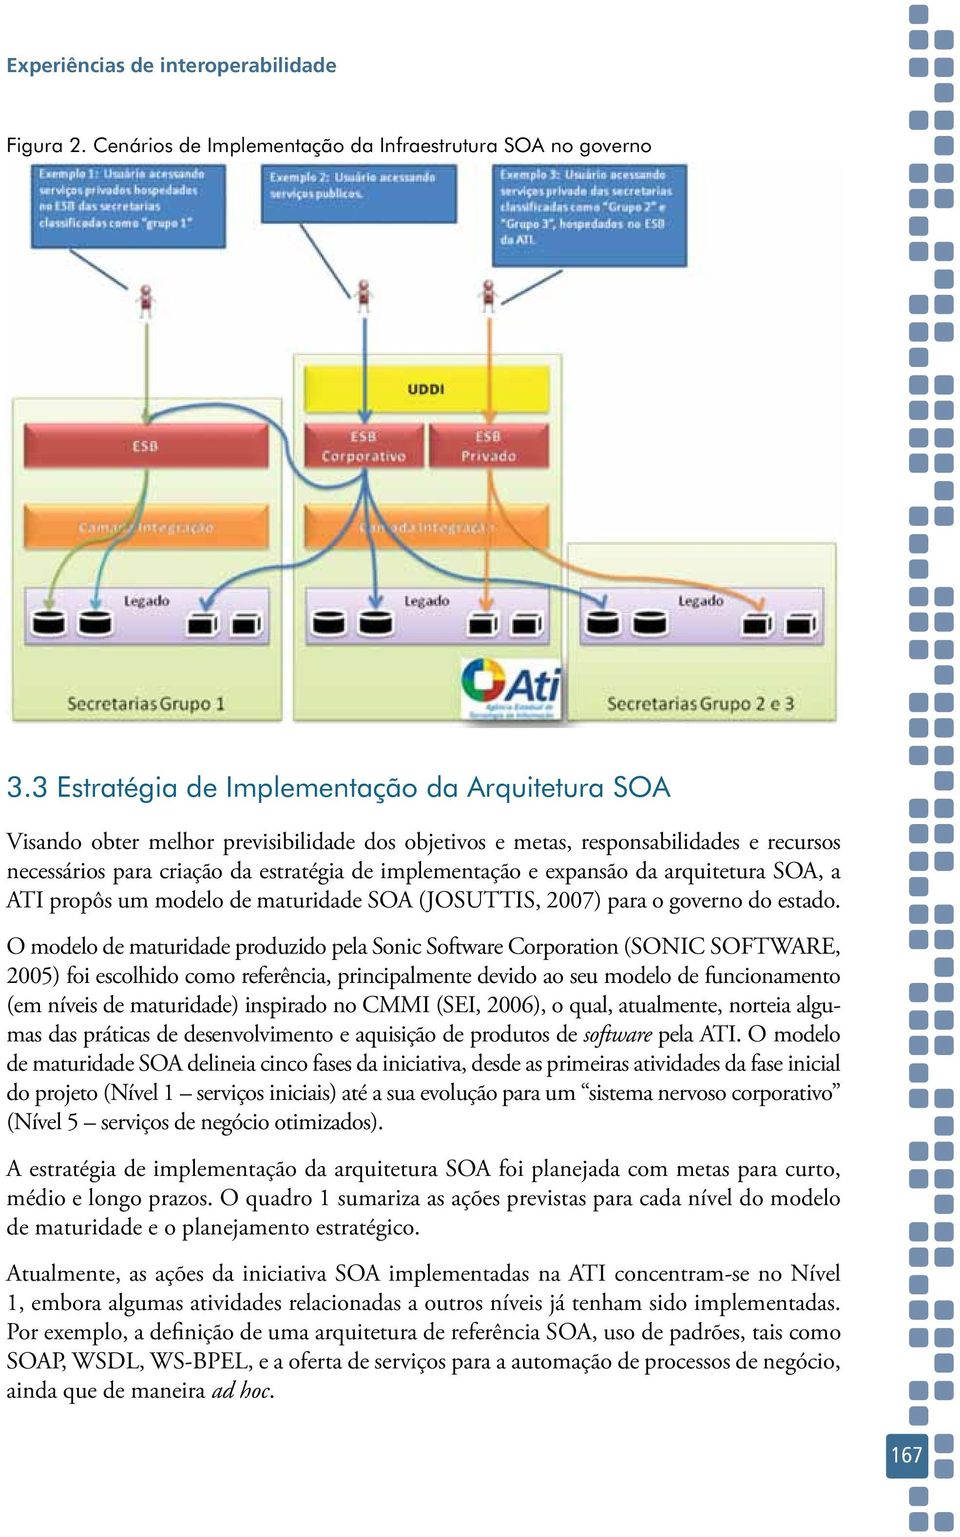 expansão da arquitetura SOA, a ATI propôs um modelo de maturidade SOA (JOSUTTIS, 2007) para o governo do estado.